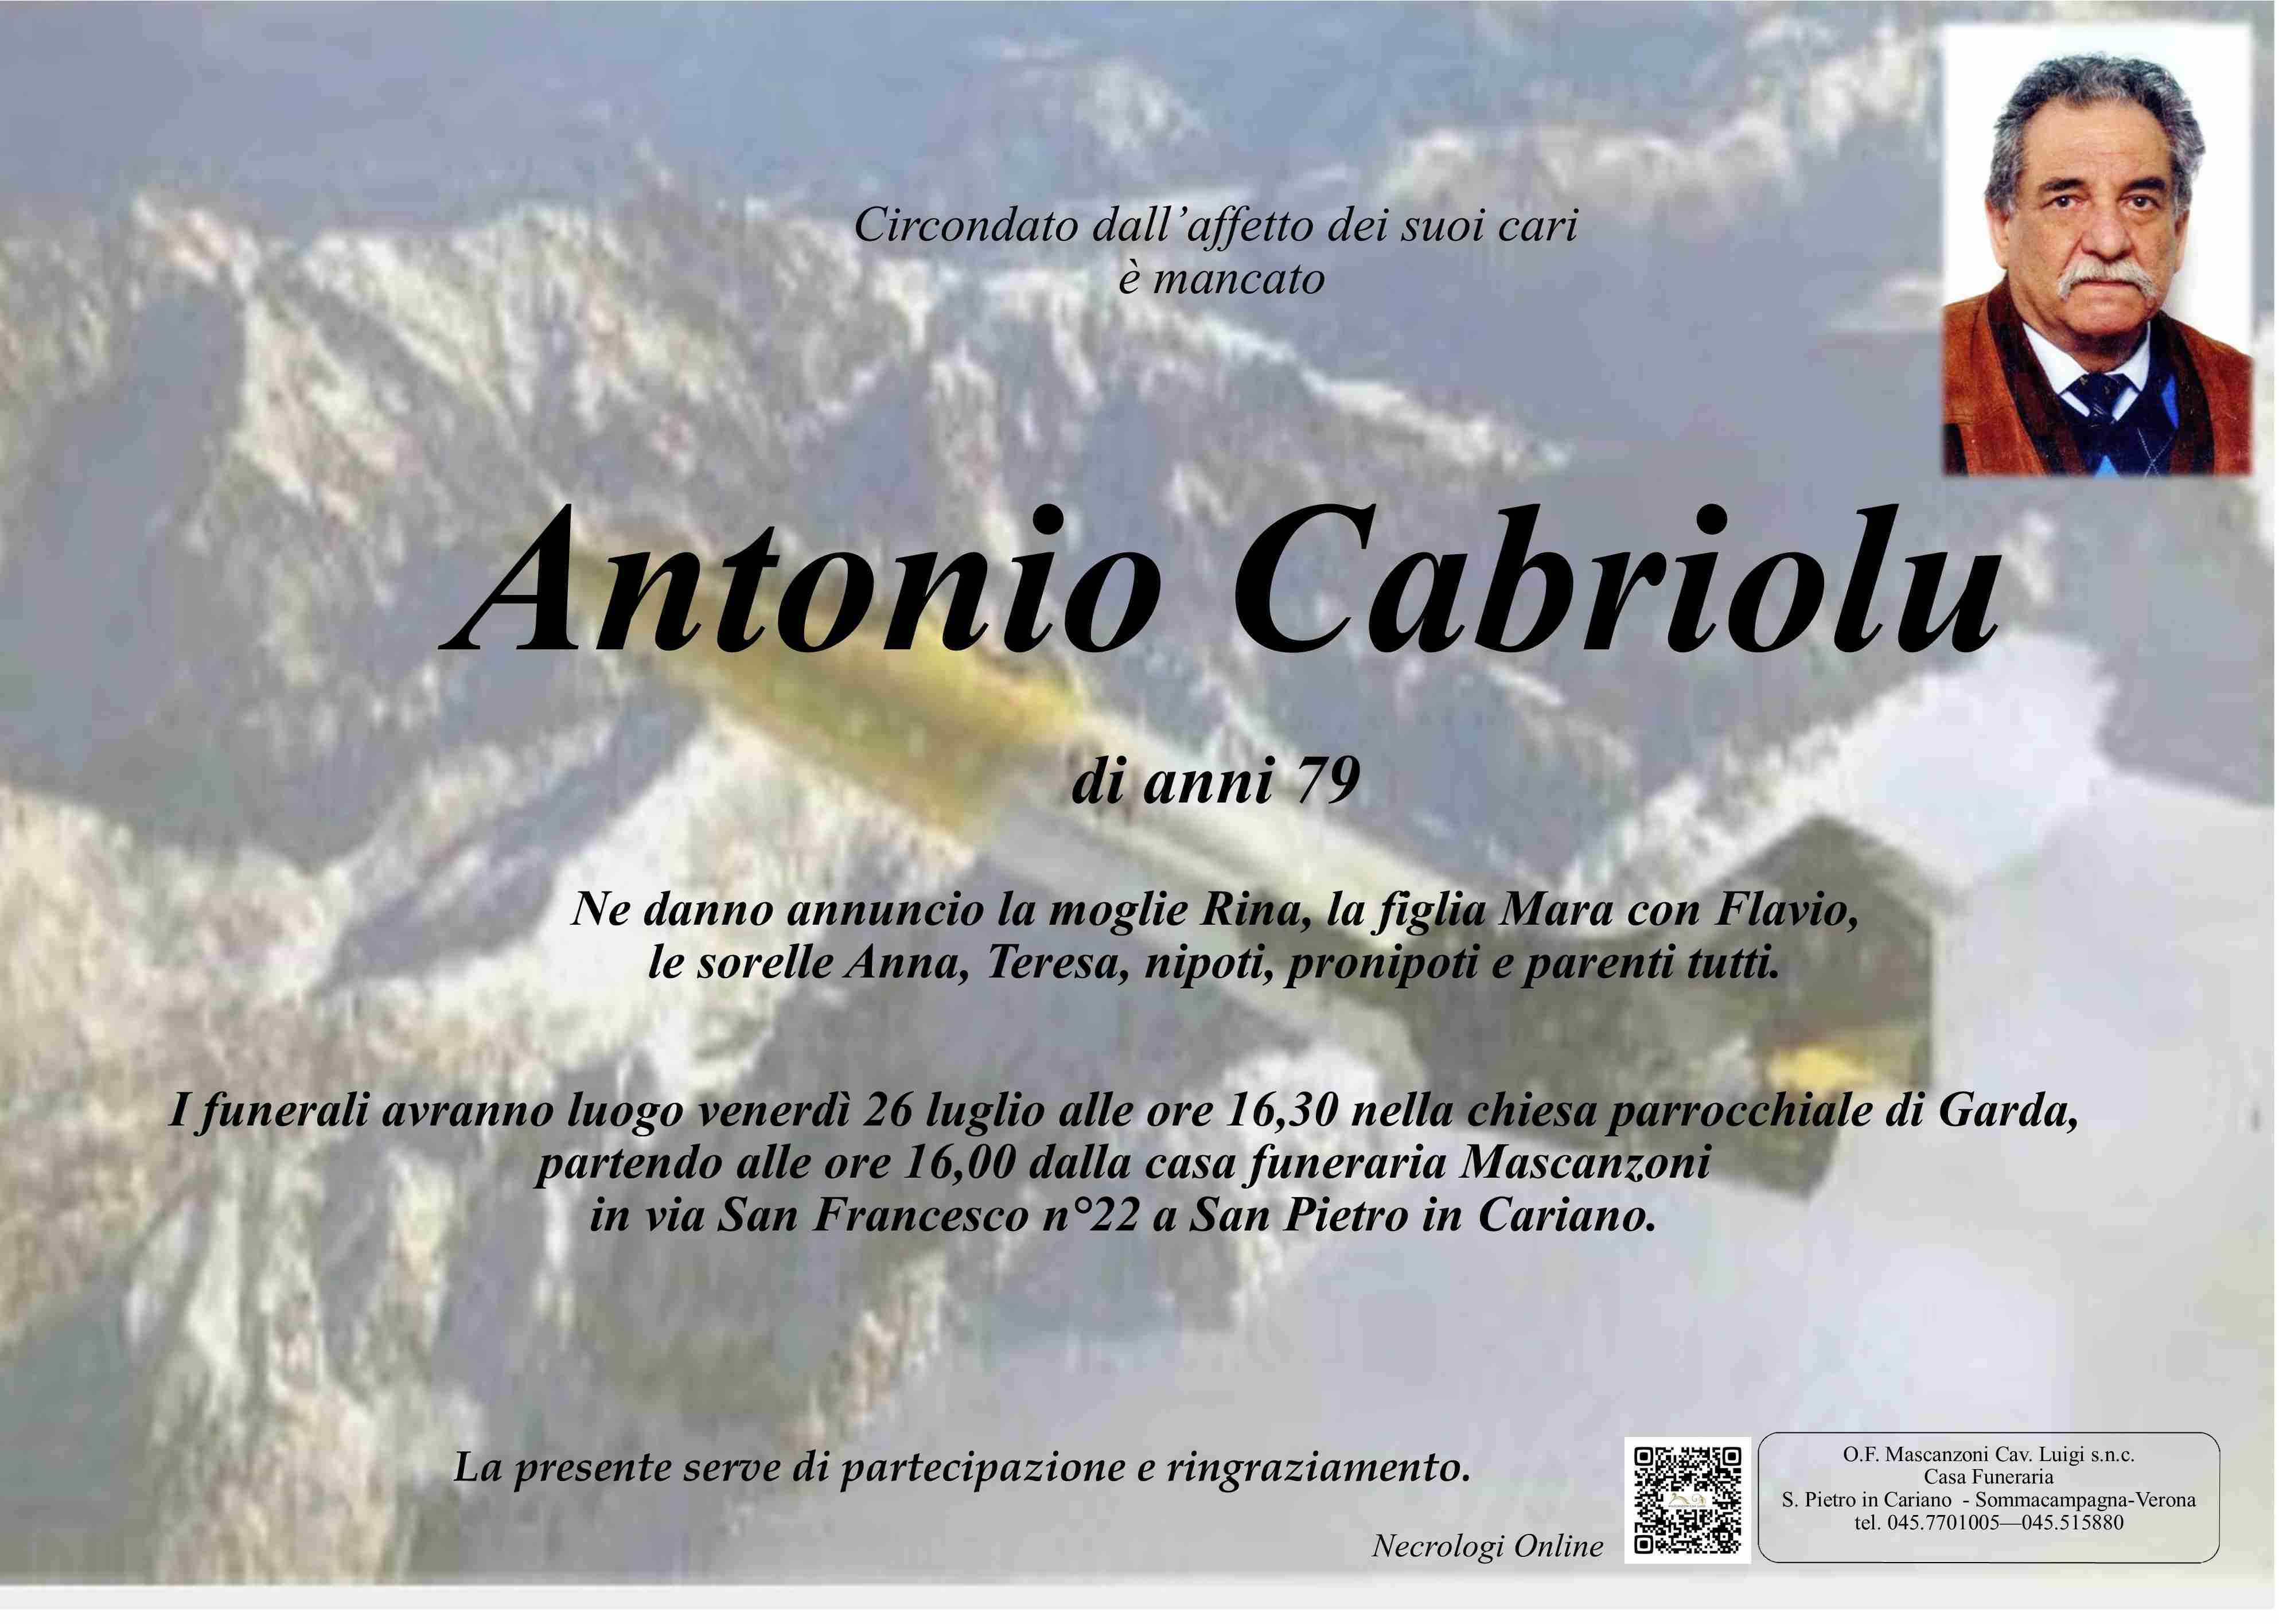 Antonio Cabriolu